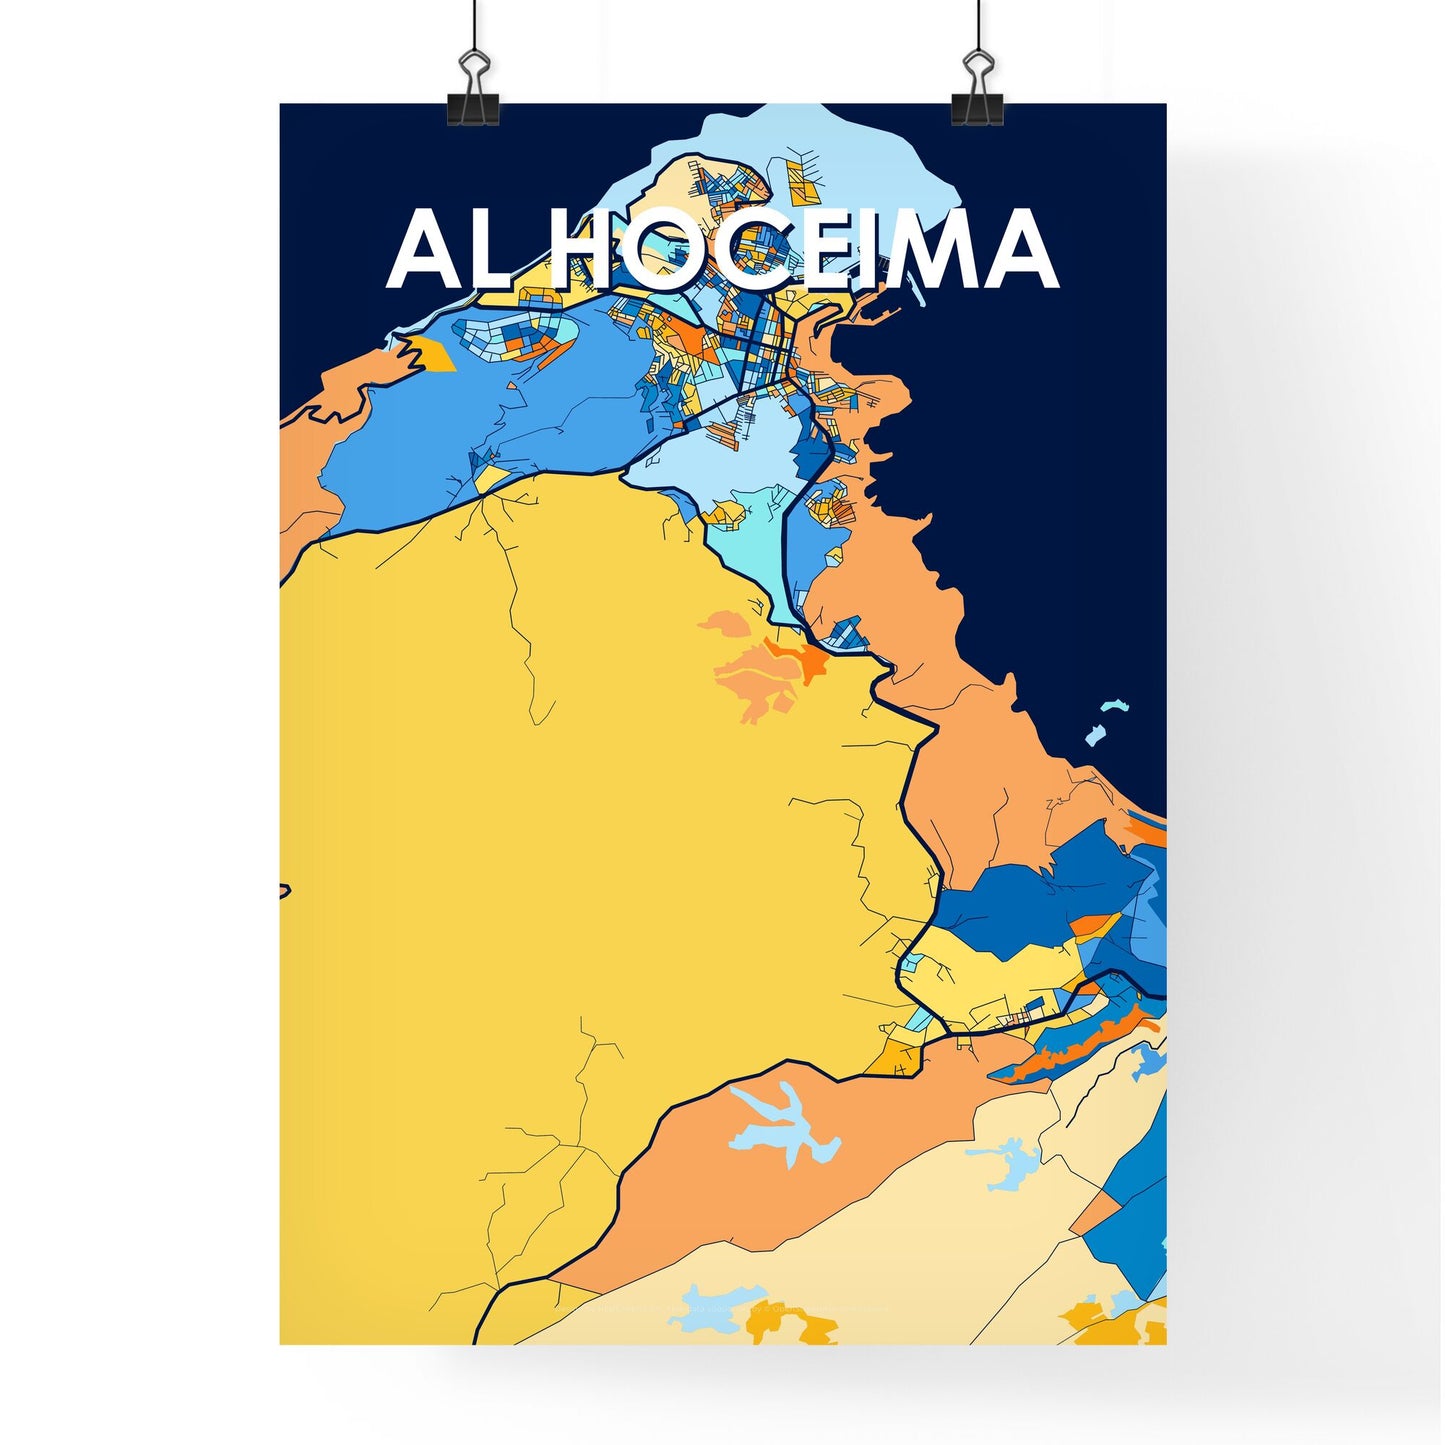 AL HOCEIMA MOROCCO Vibrant Colorful Art Map Poster Blue Orange